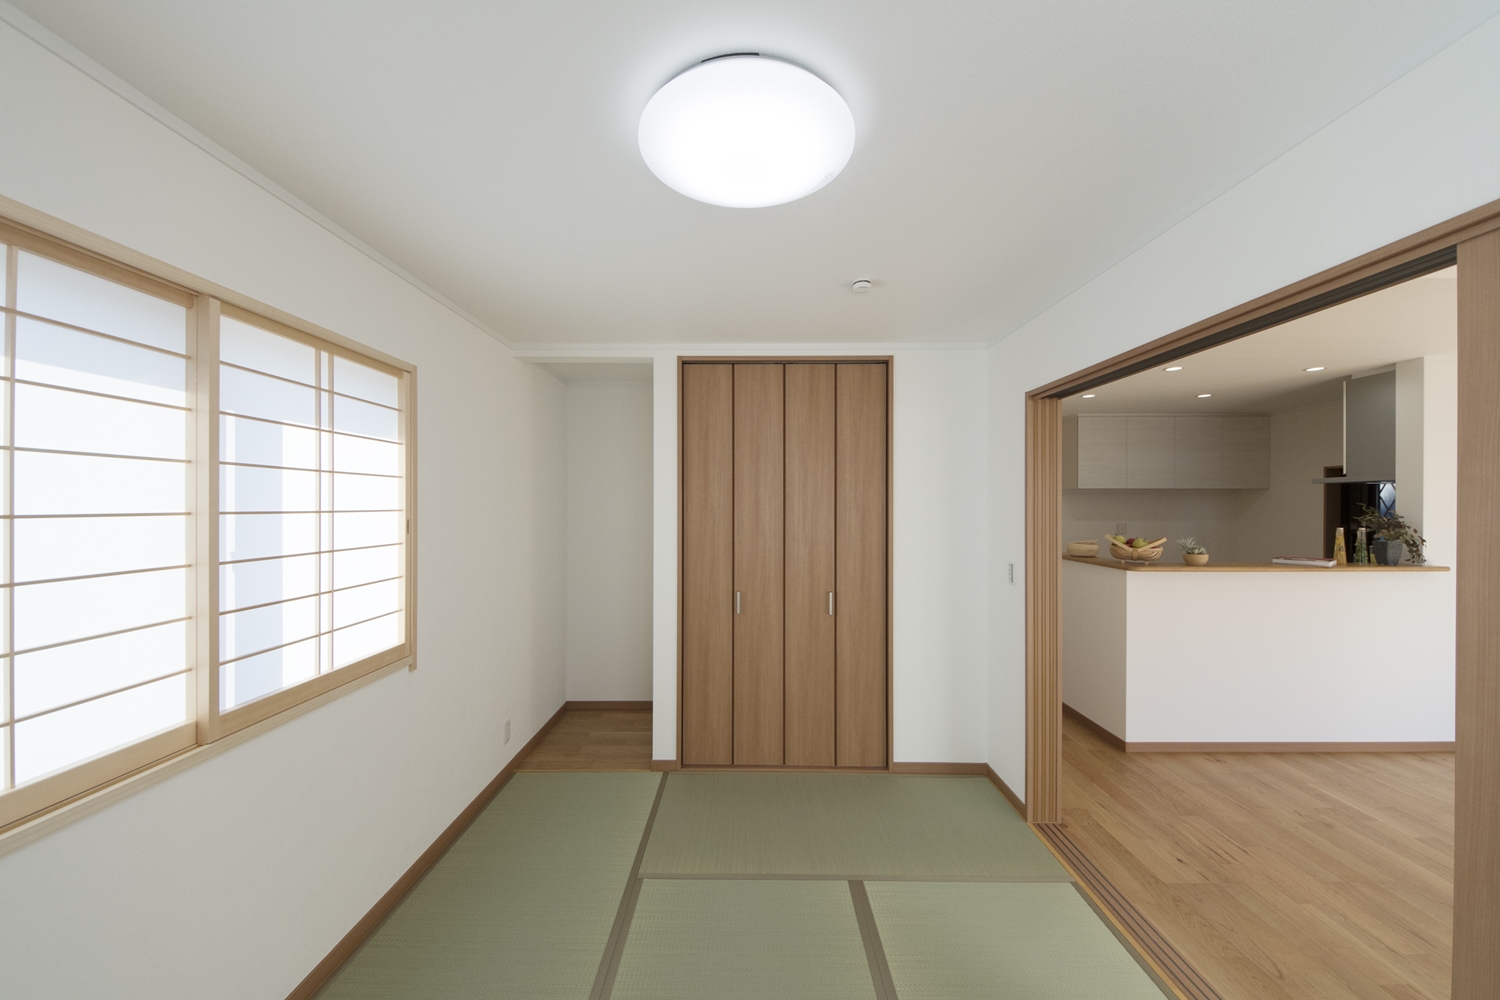 1階畳敷き洋室/横繁障子と畳のさわやかなグリーンが空間を彩る、和洋モダンスタイル。